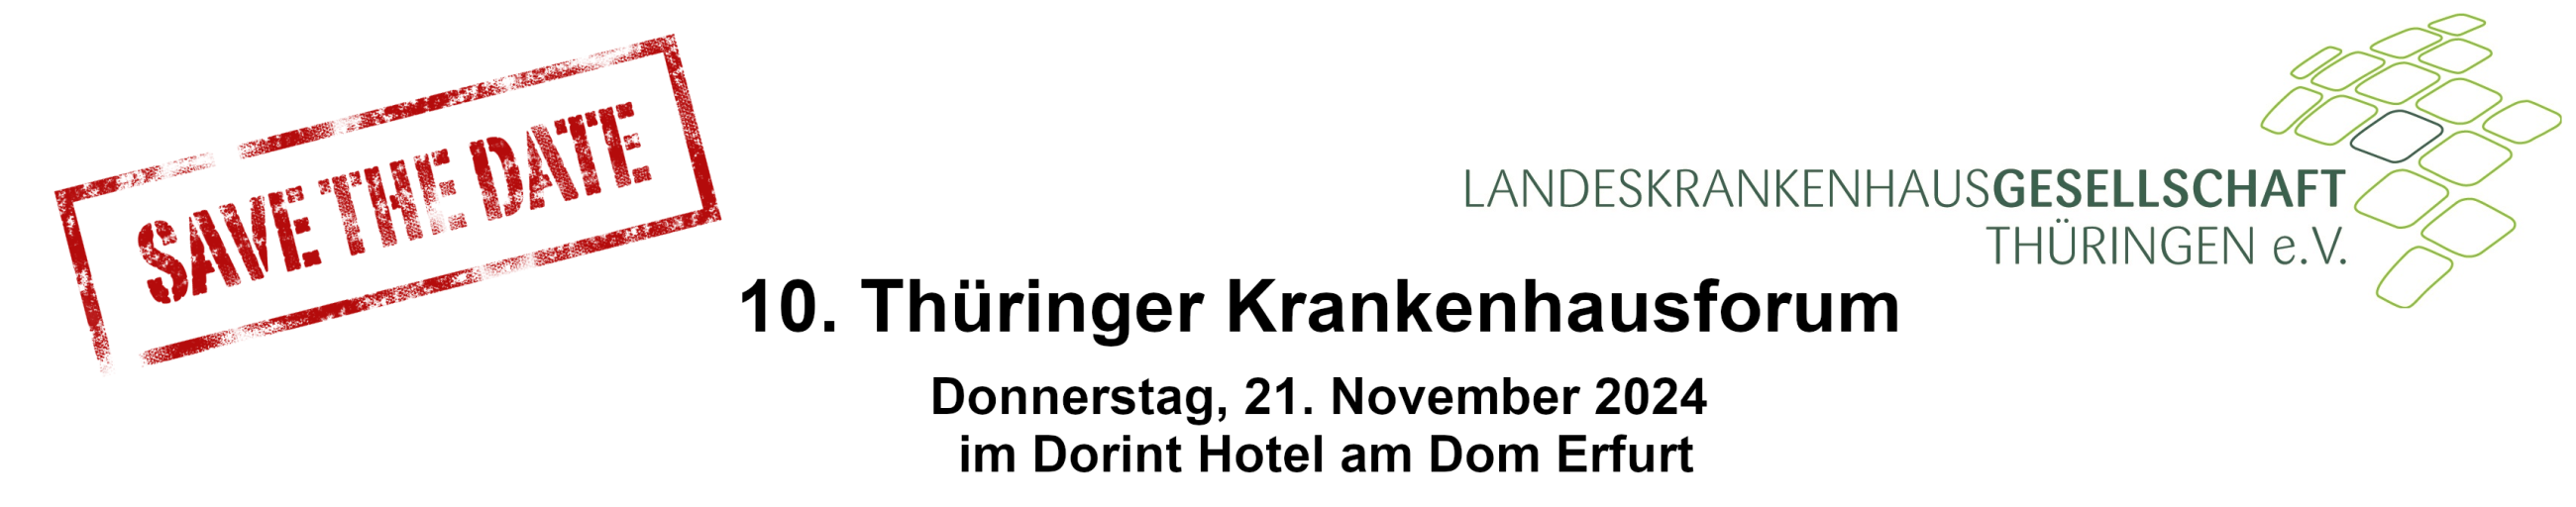 (c) Thueringer-krankenhausforum.com